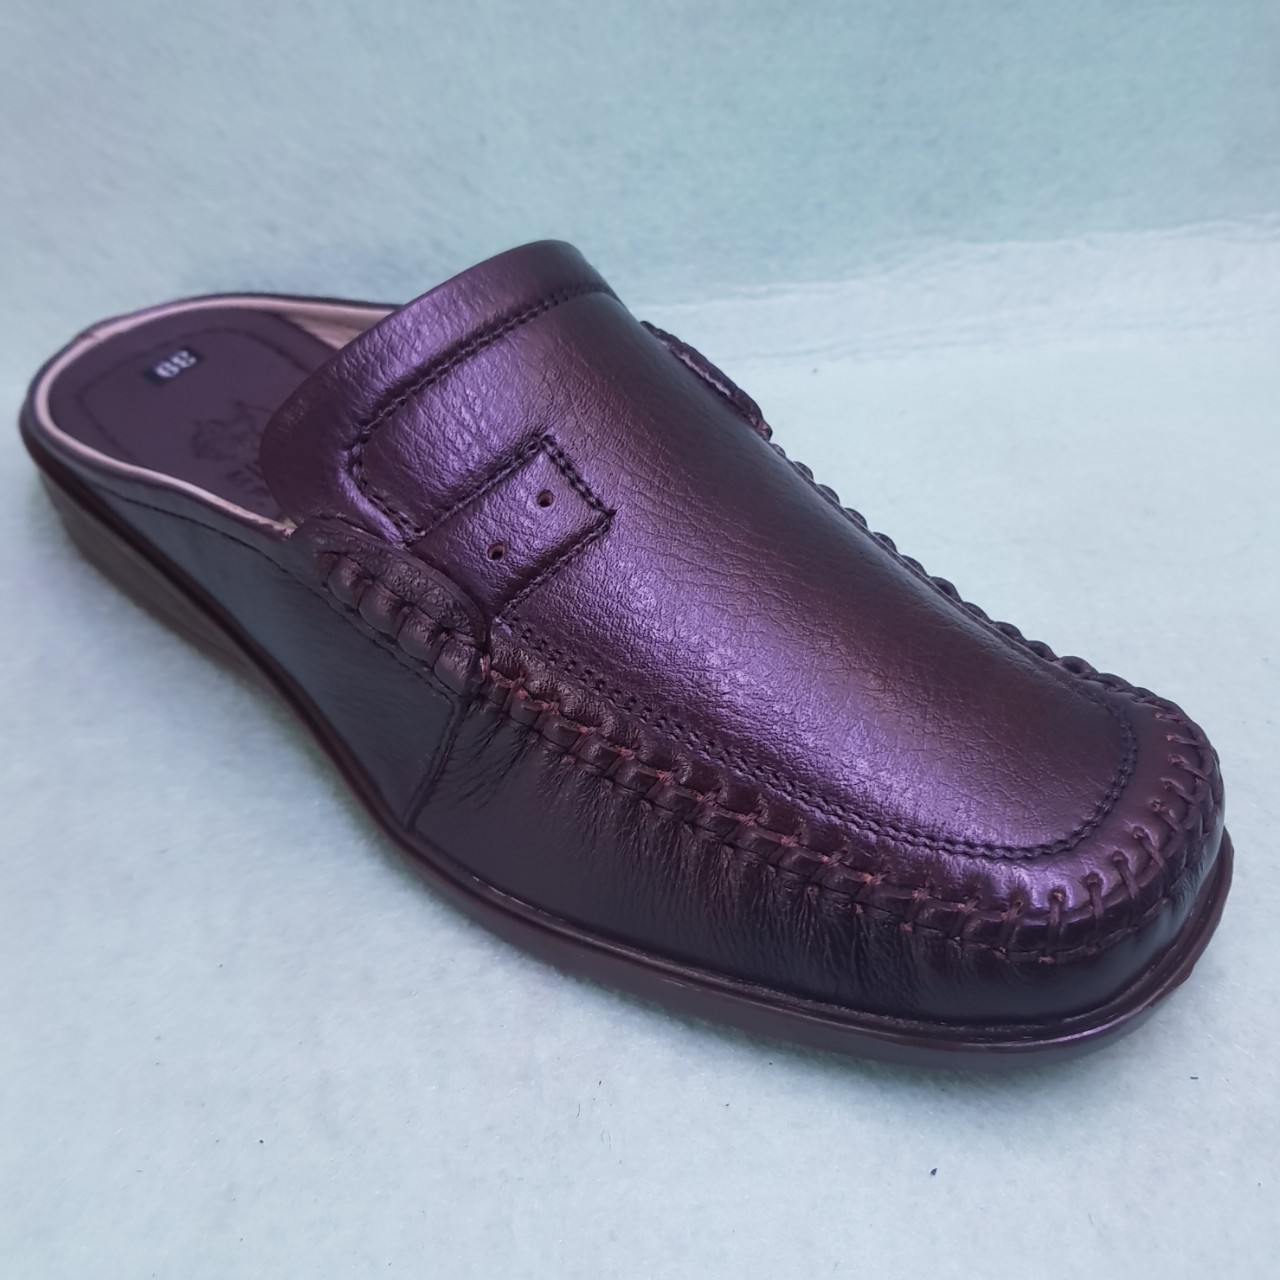 xưởng phân phối bán buôn bỏ sỉ giày sabo nam da bò 100%, giá sỉ tận gốc, bán sỉ cho đại lý giày dép và khách sỉ toàn quốc